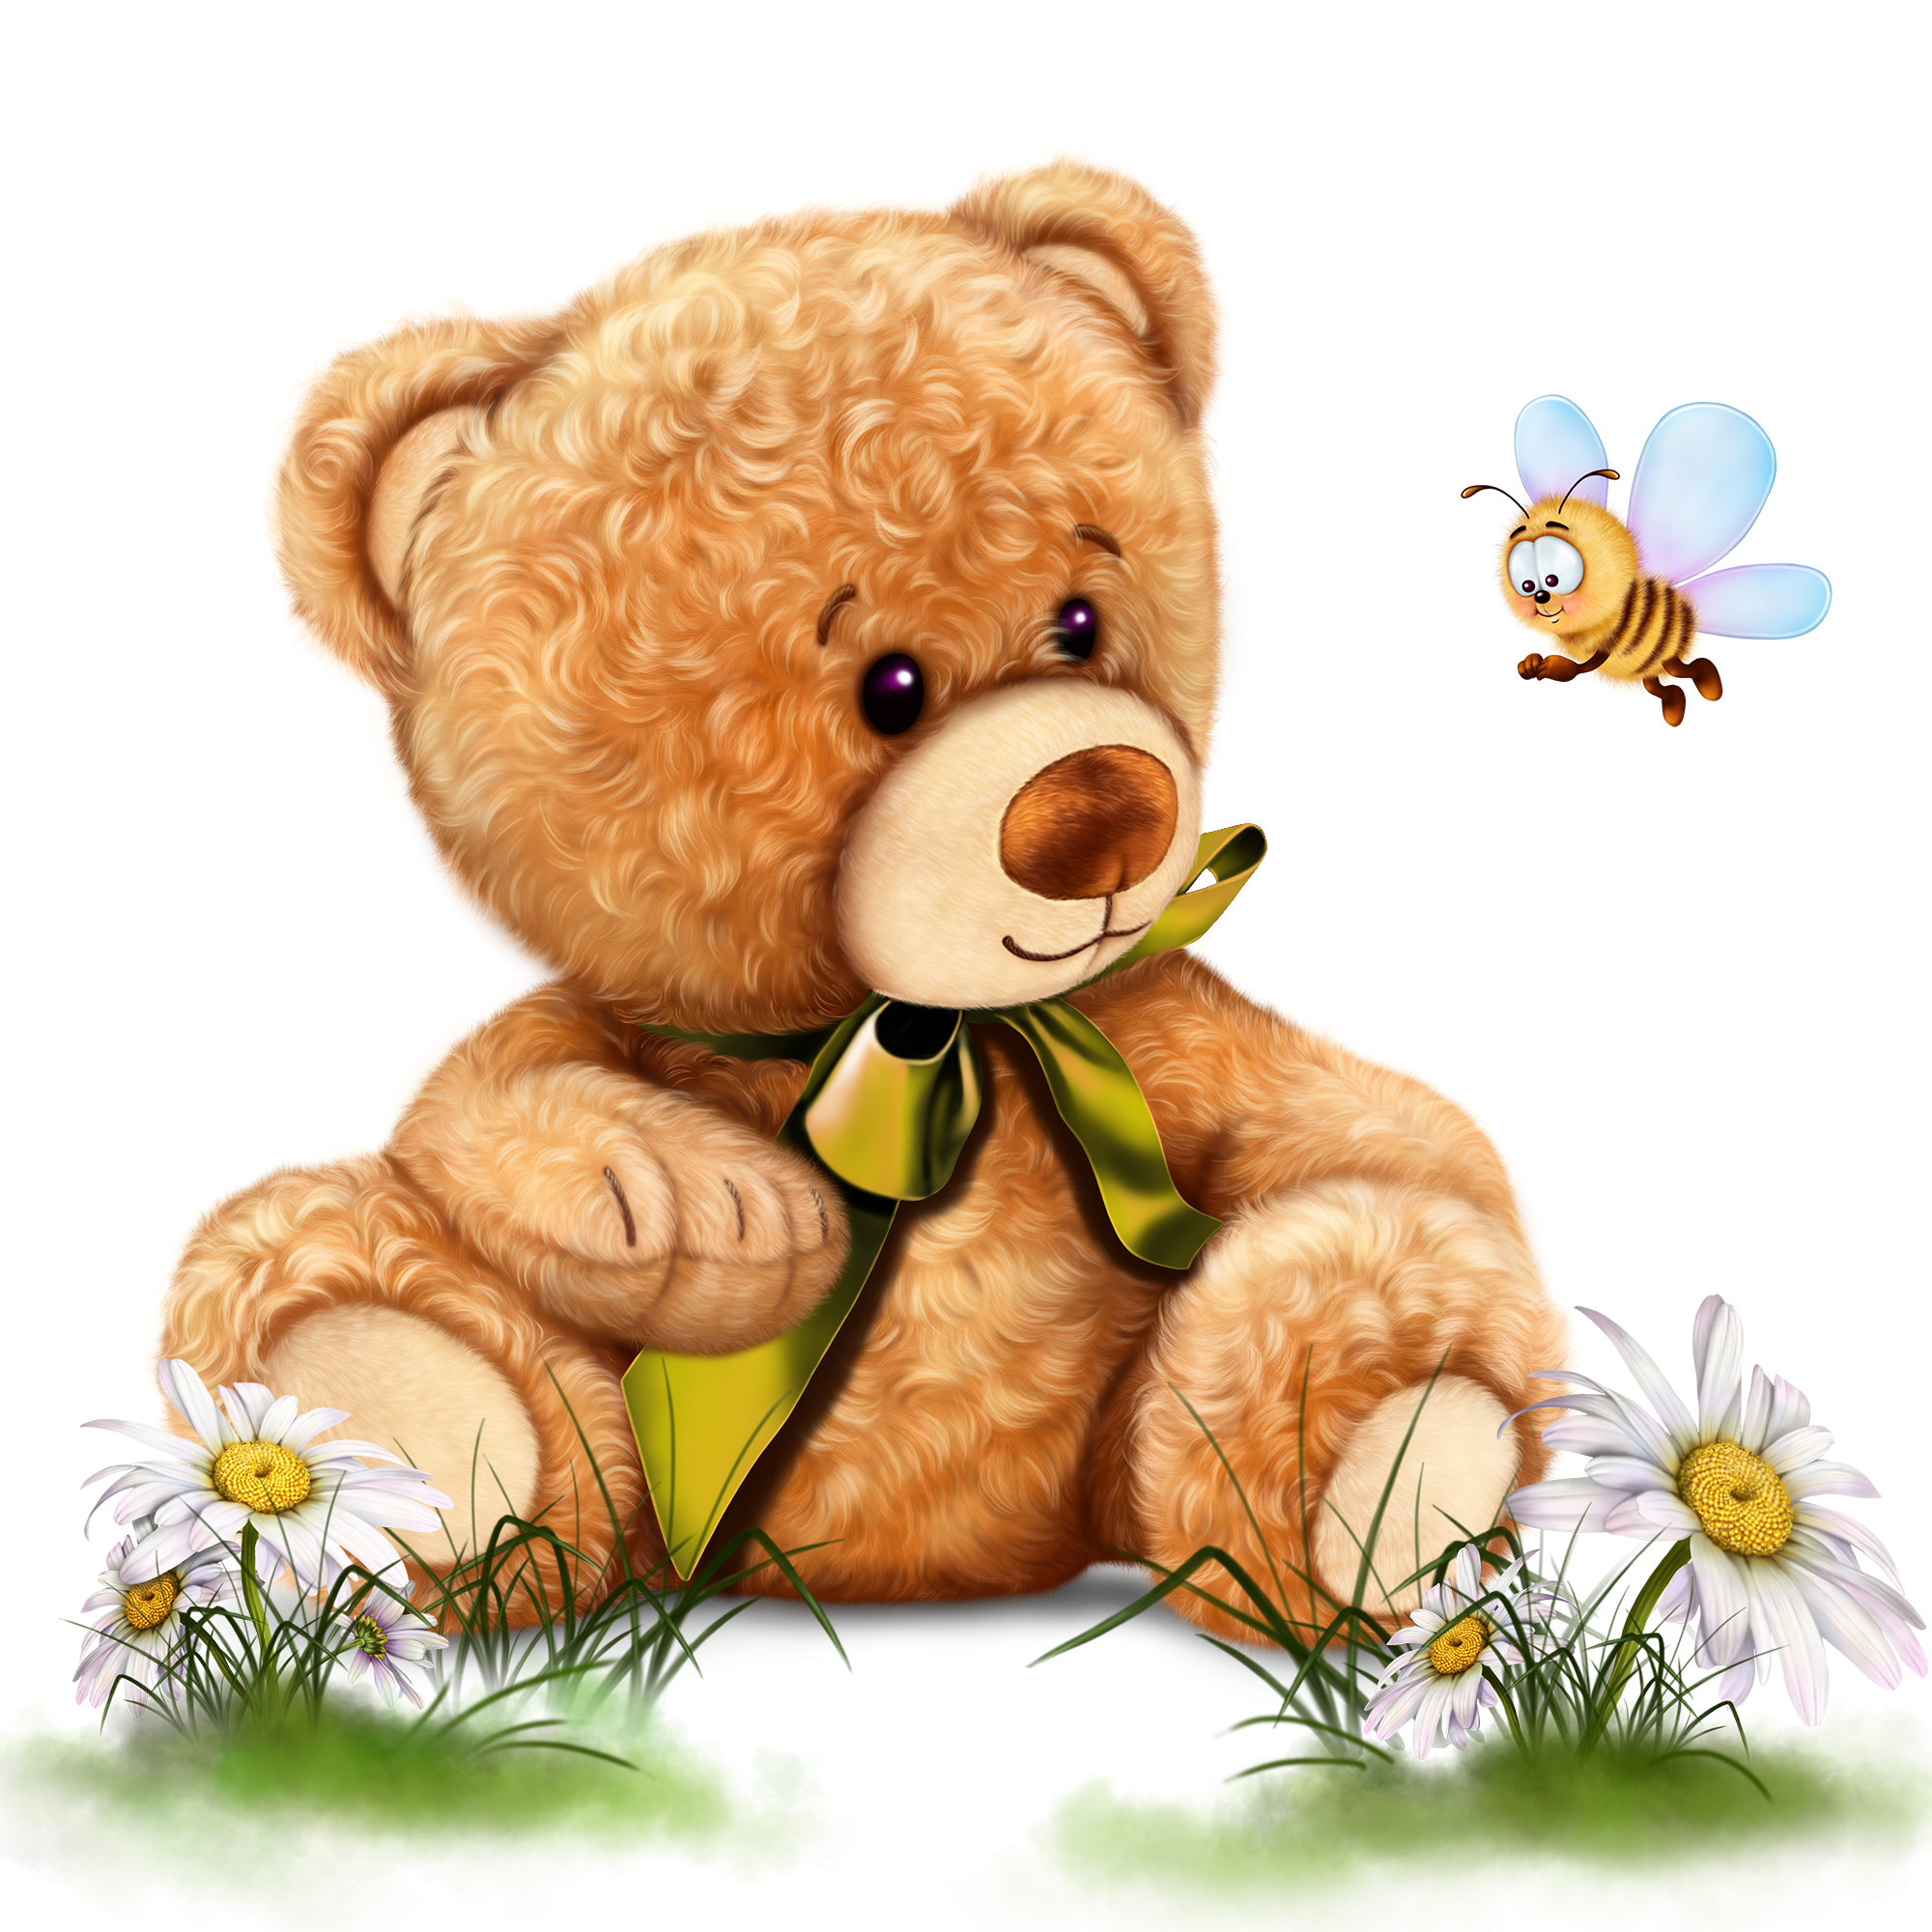 Медовый мишка 36. Медвежонок для детей. Медвежонок с медом. Медвежонок мультяшный. Медвежонок с бочонком меда.